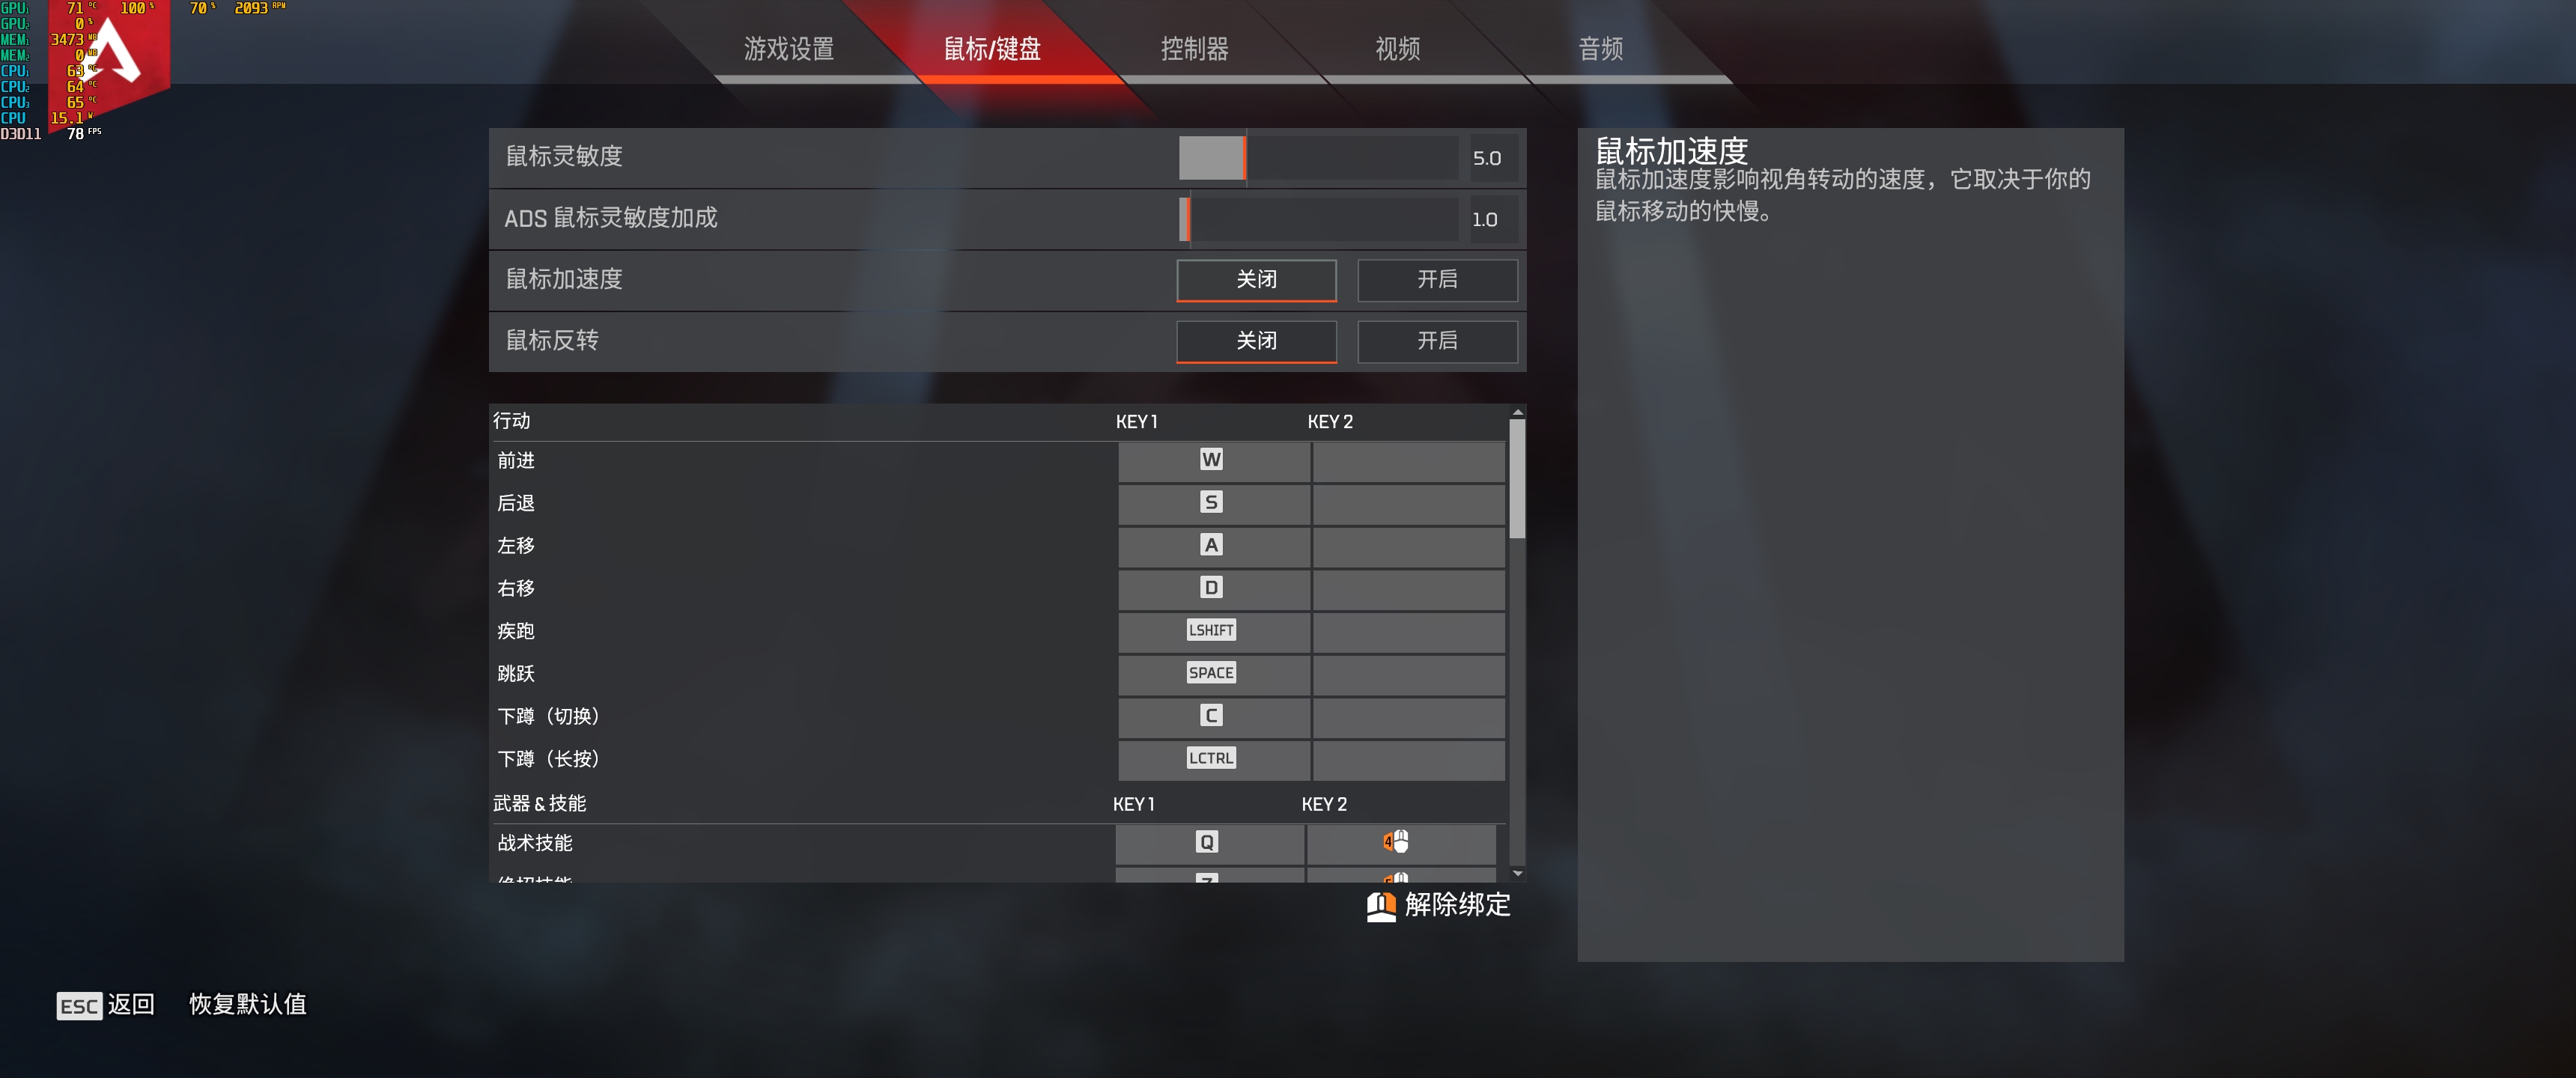 泰坦陨落免费大逃杀游戏《Apex英雄》现已发售 支持简体中文